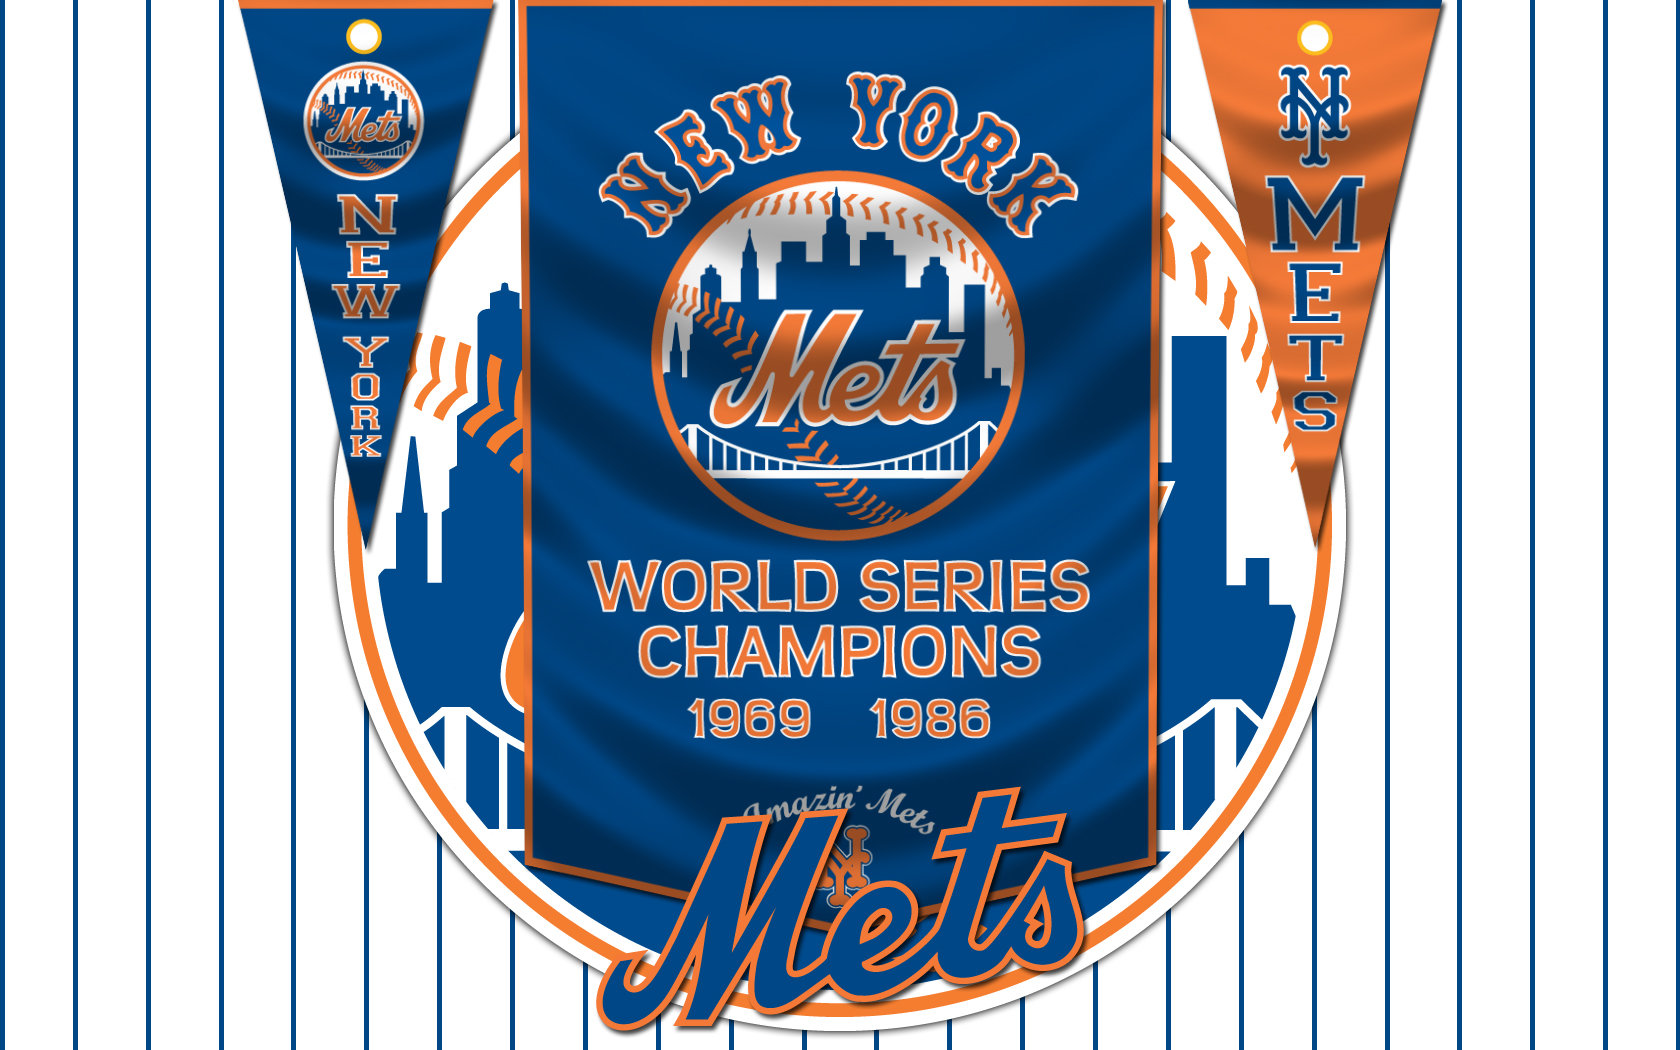 Mets Banners by monkeybiziu on